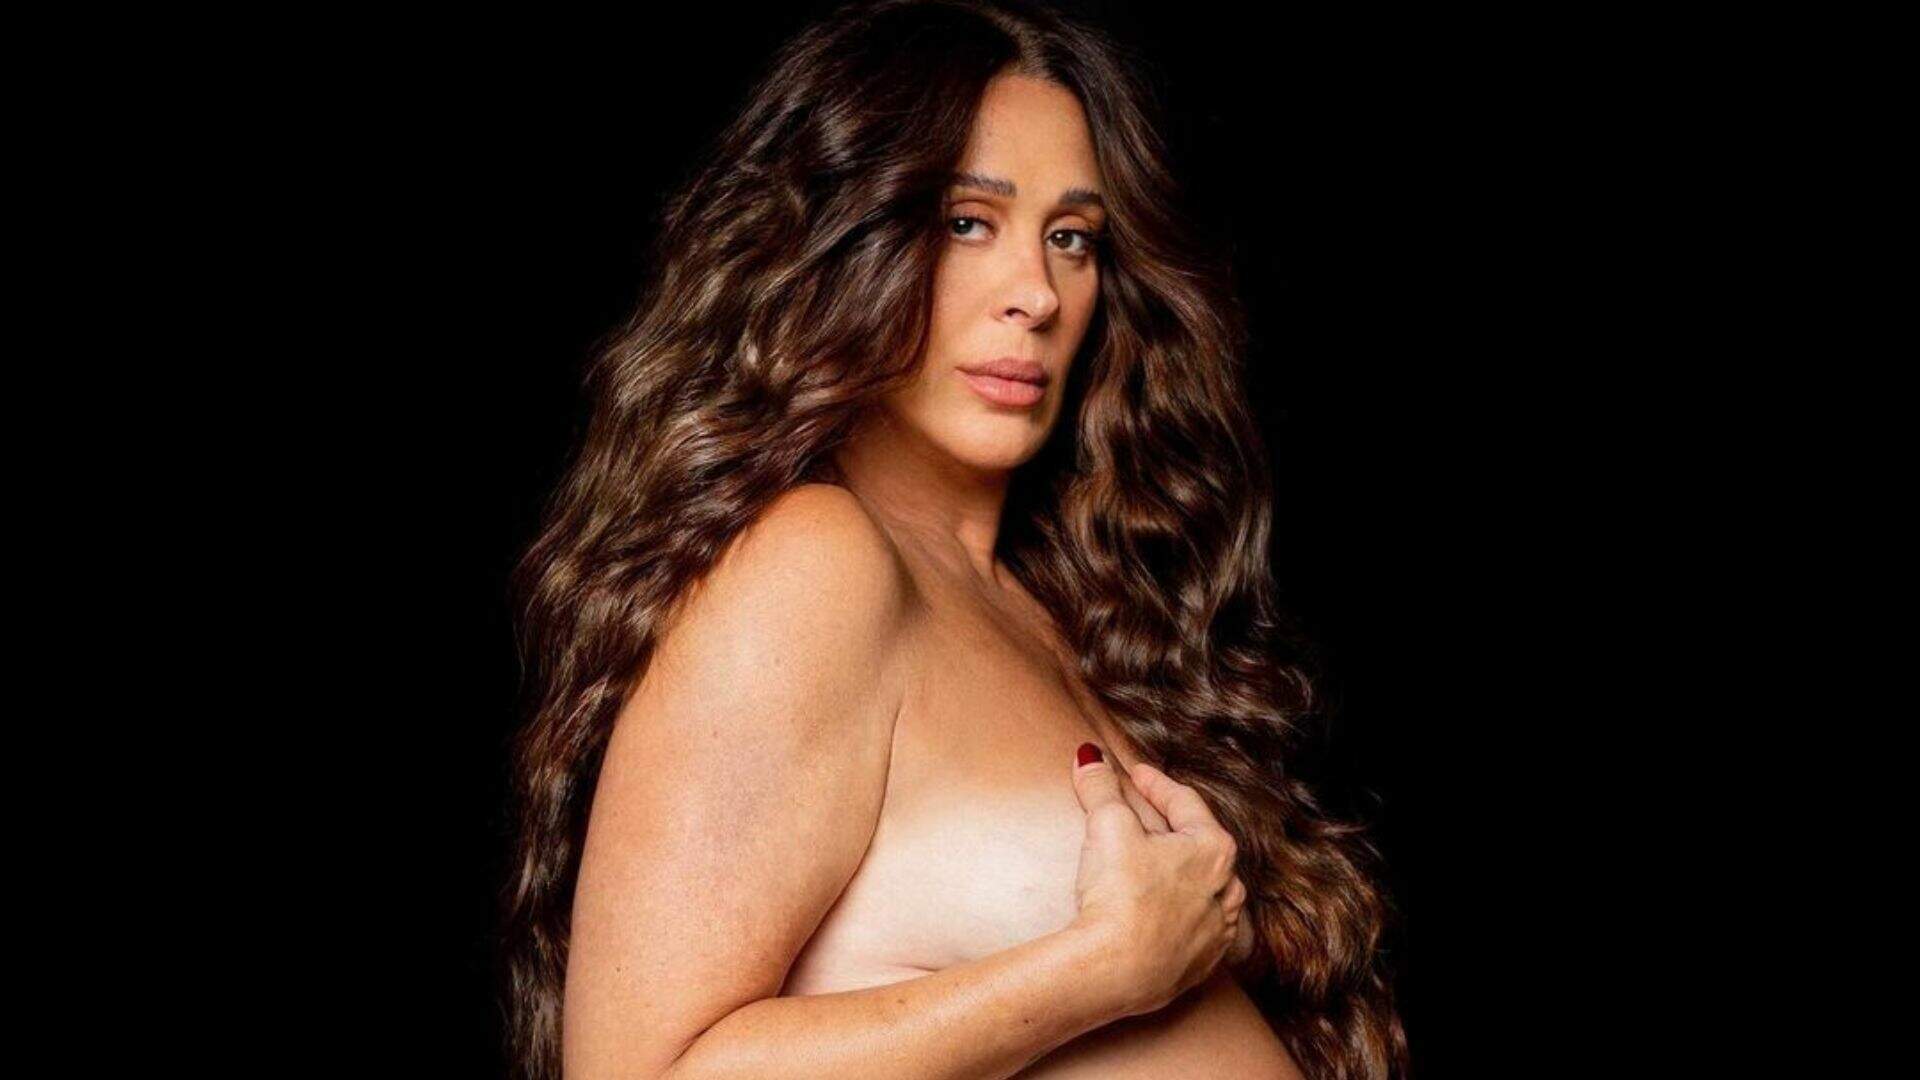 Na reta final da gravidez, Claudia Raia faz ensaio de fotos: “Grávida também é linda, sexy” - Metropolitana FM